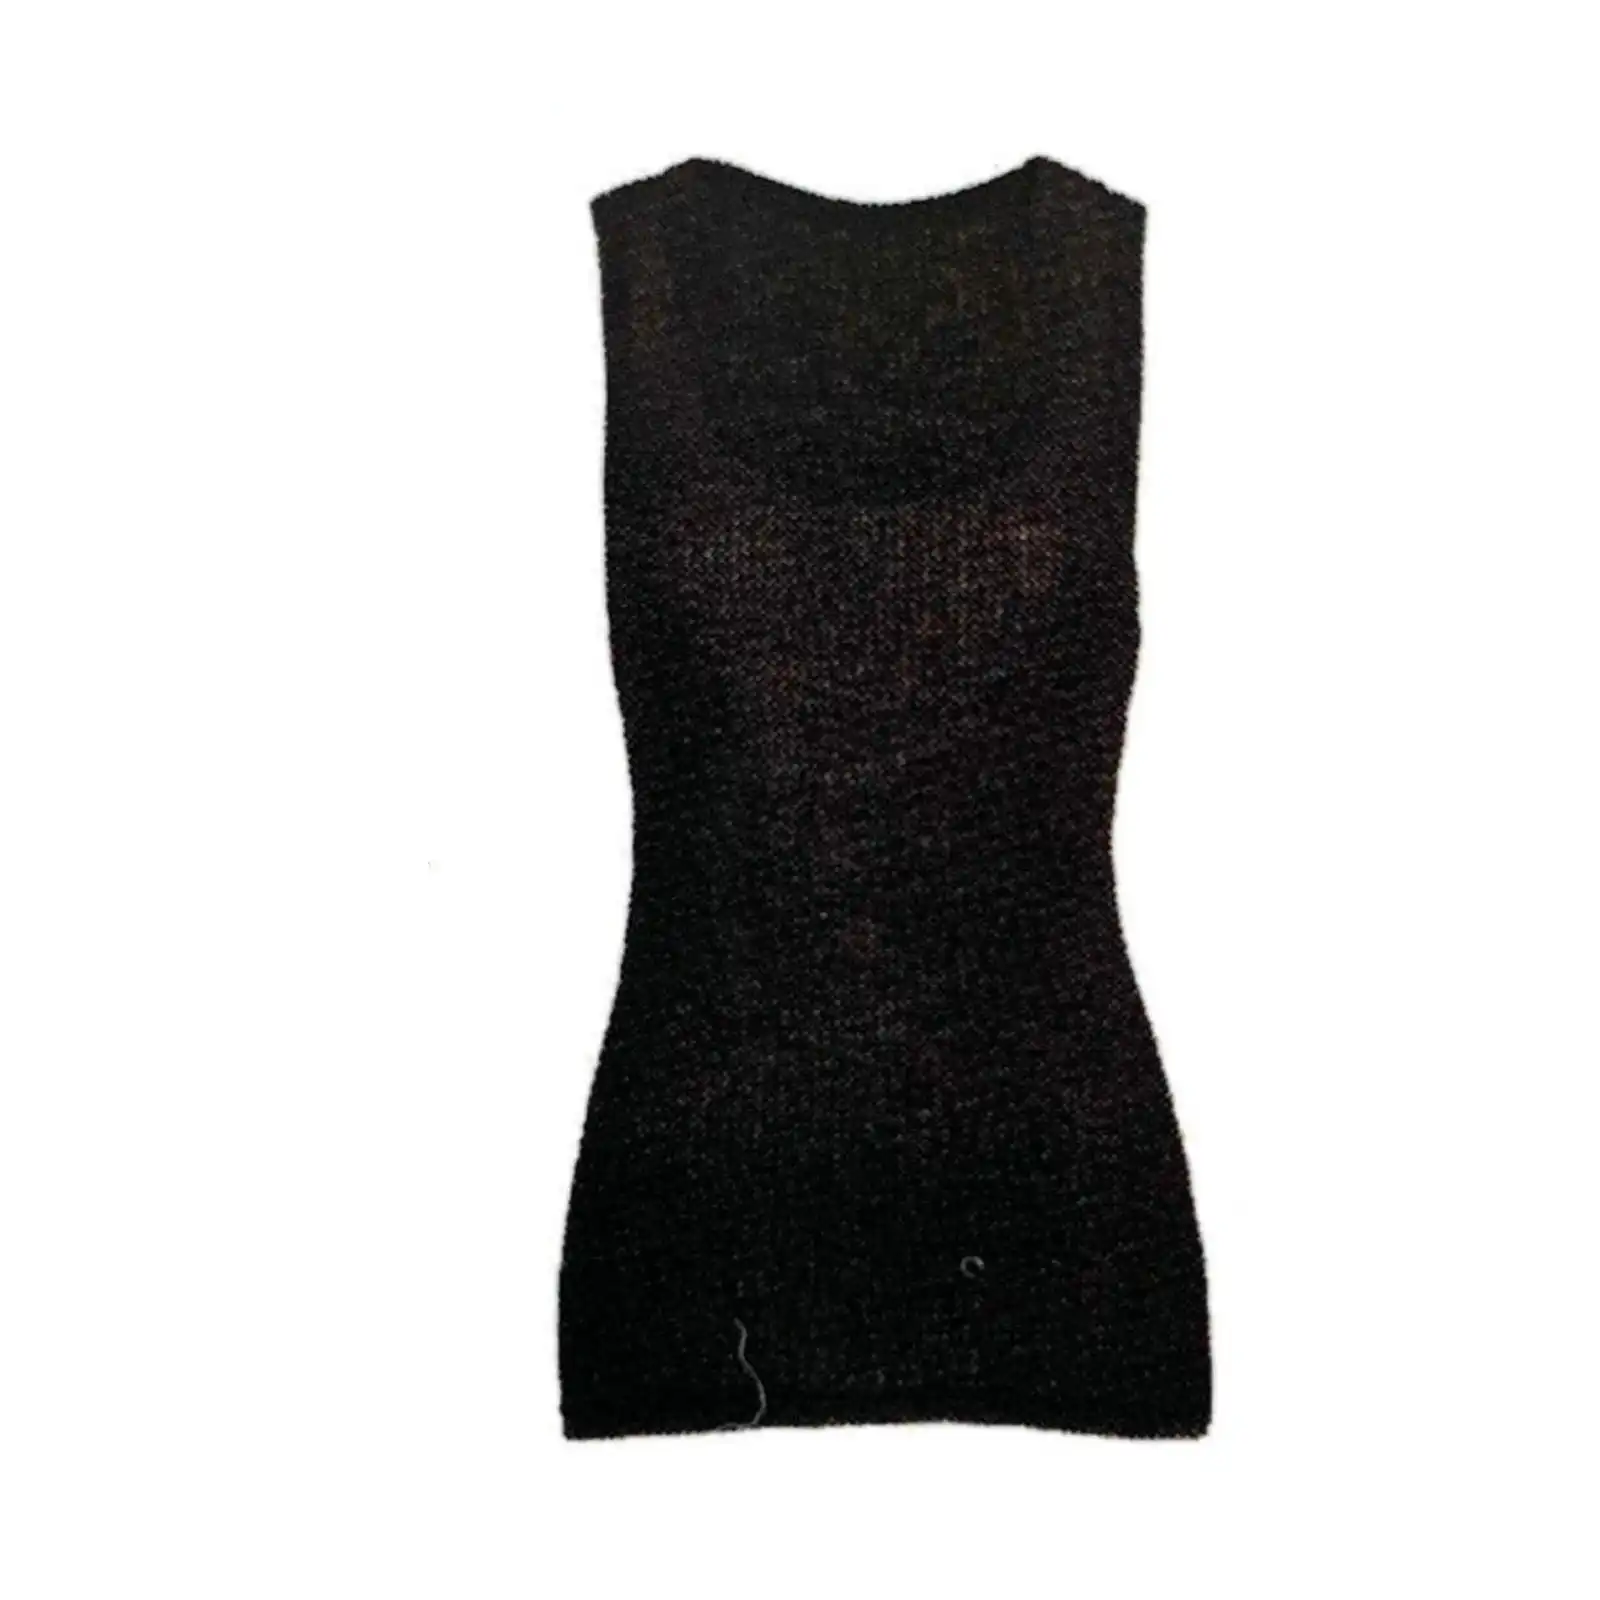 Merino Skins Wool Blend Ladies Verona V-Neck Tee Thermal Top Tank - Black